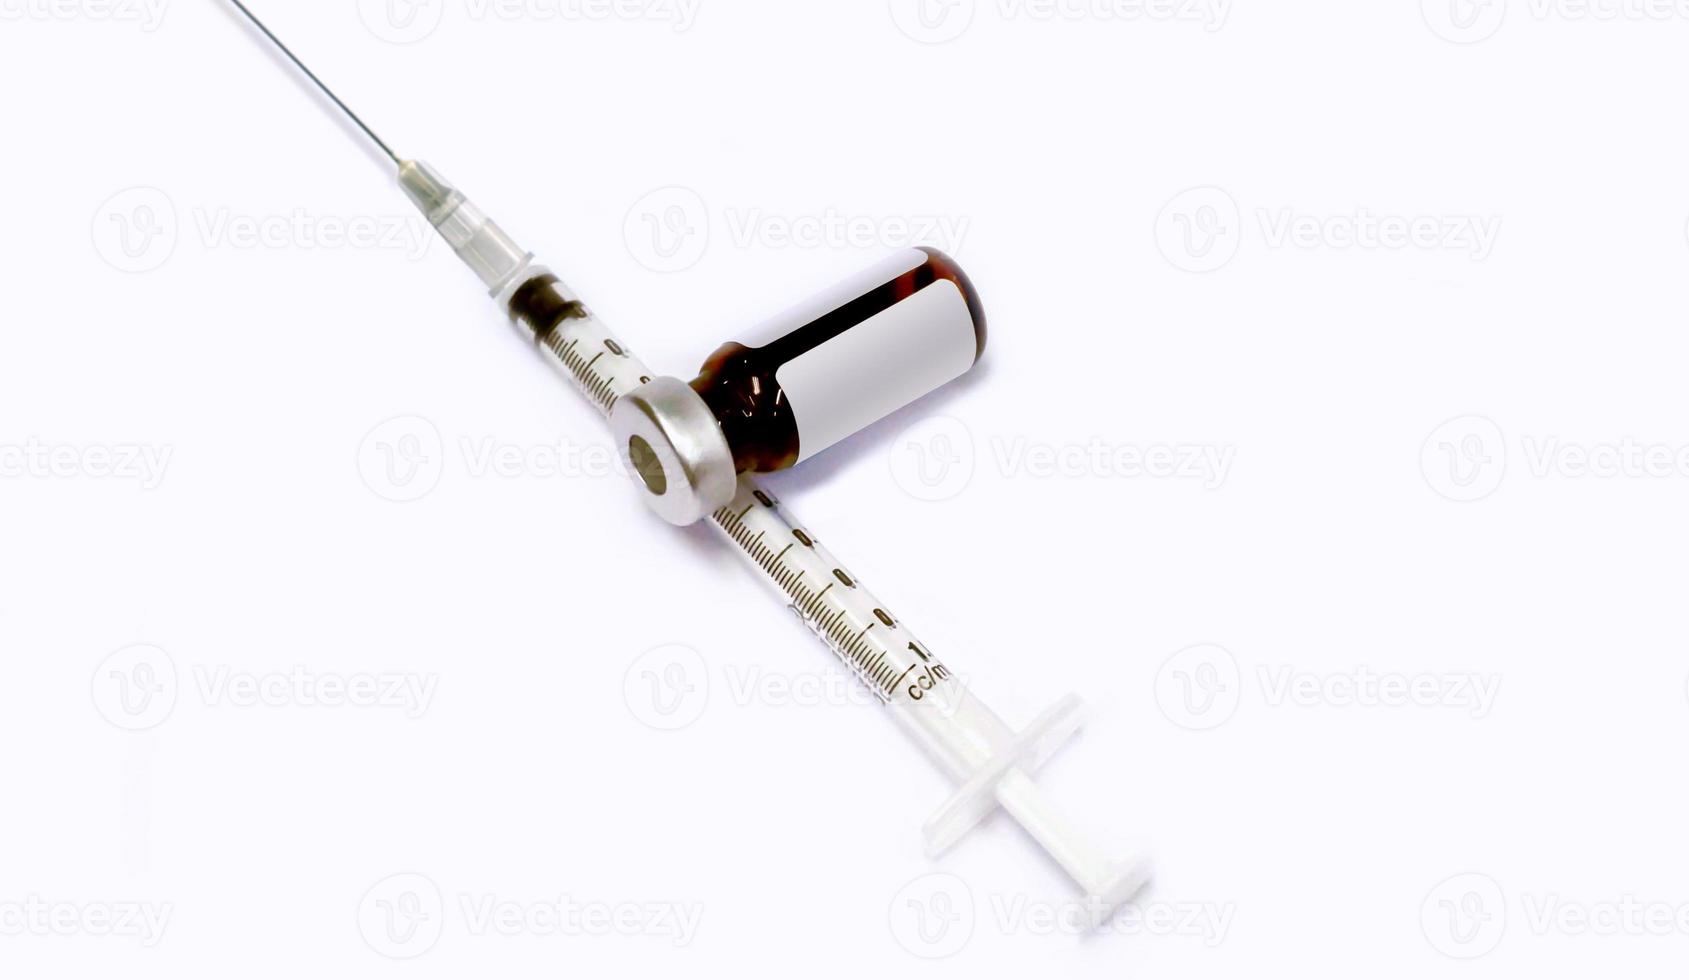 3 ml. Ampule of drug and plastic syringe with medical needle on white background. photo